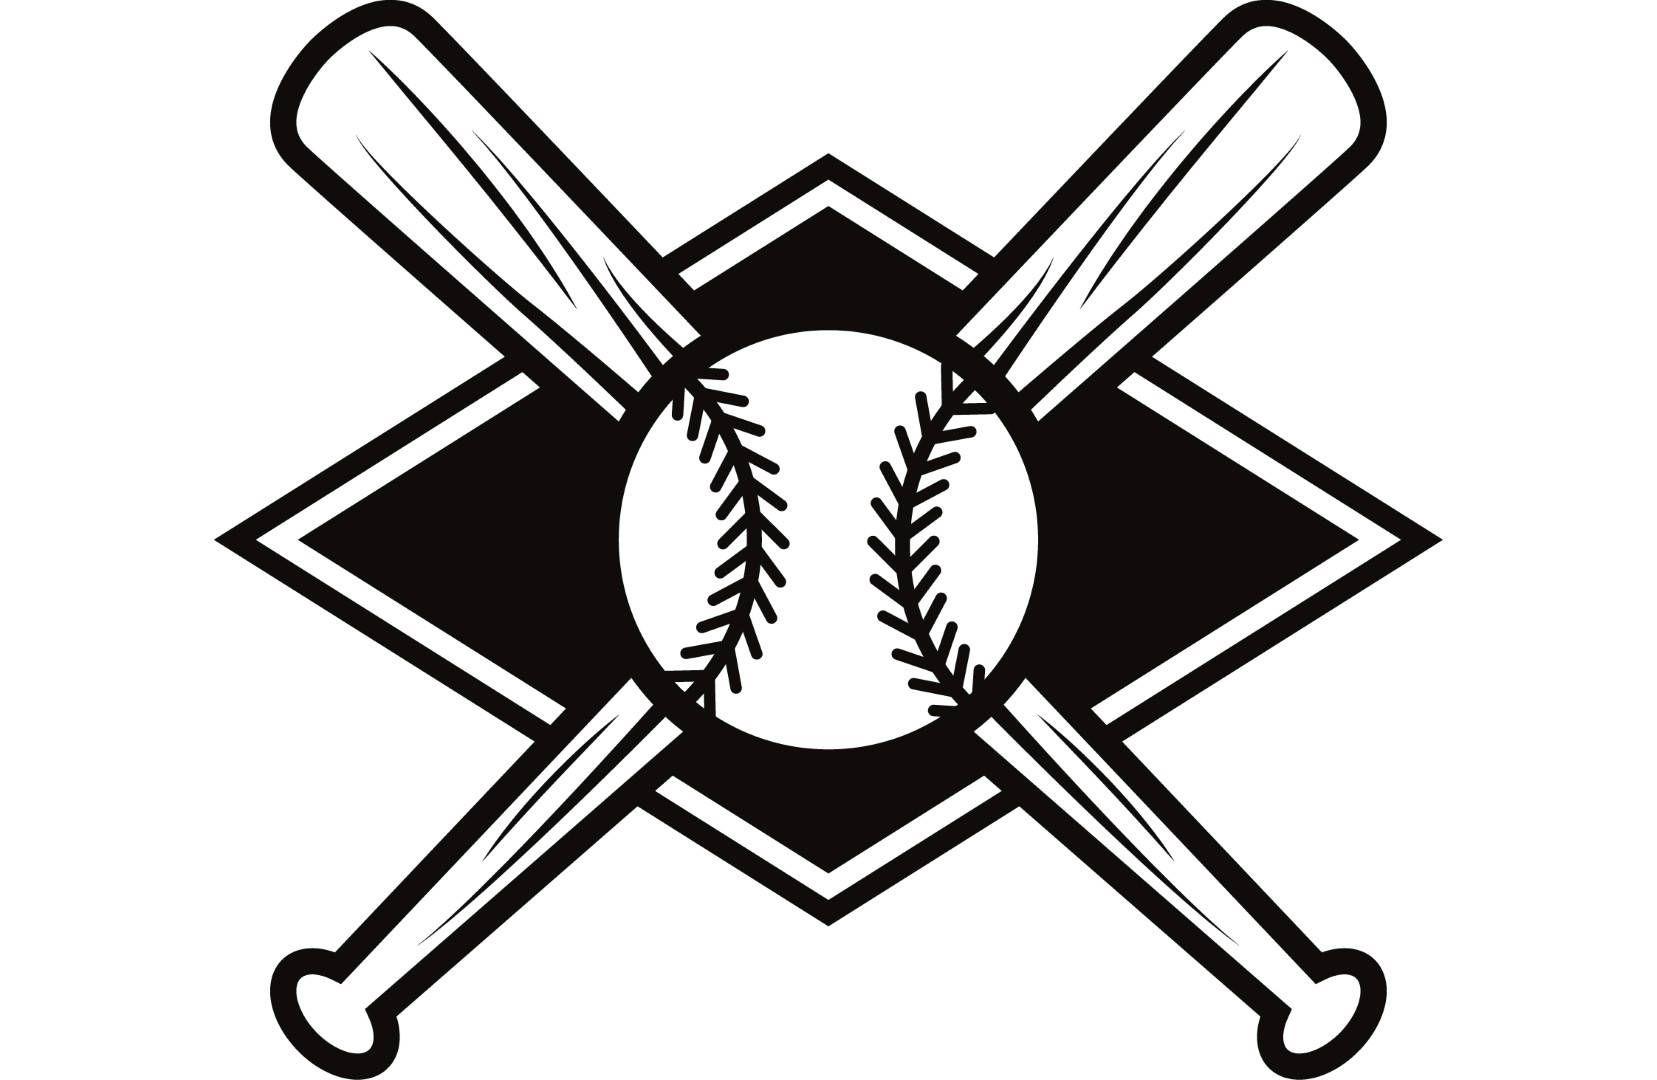 Baseball Field Logo - Baseball Logo 7 Bats Crossed Ball Diamond League Equipment | Etsy